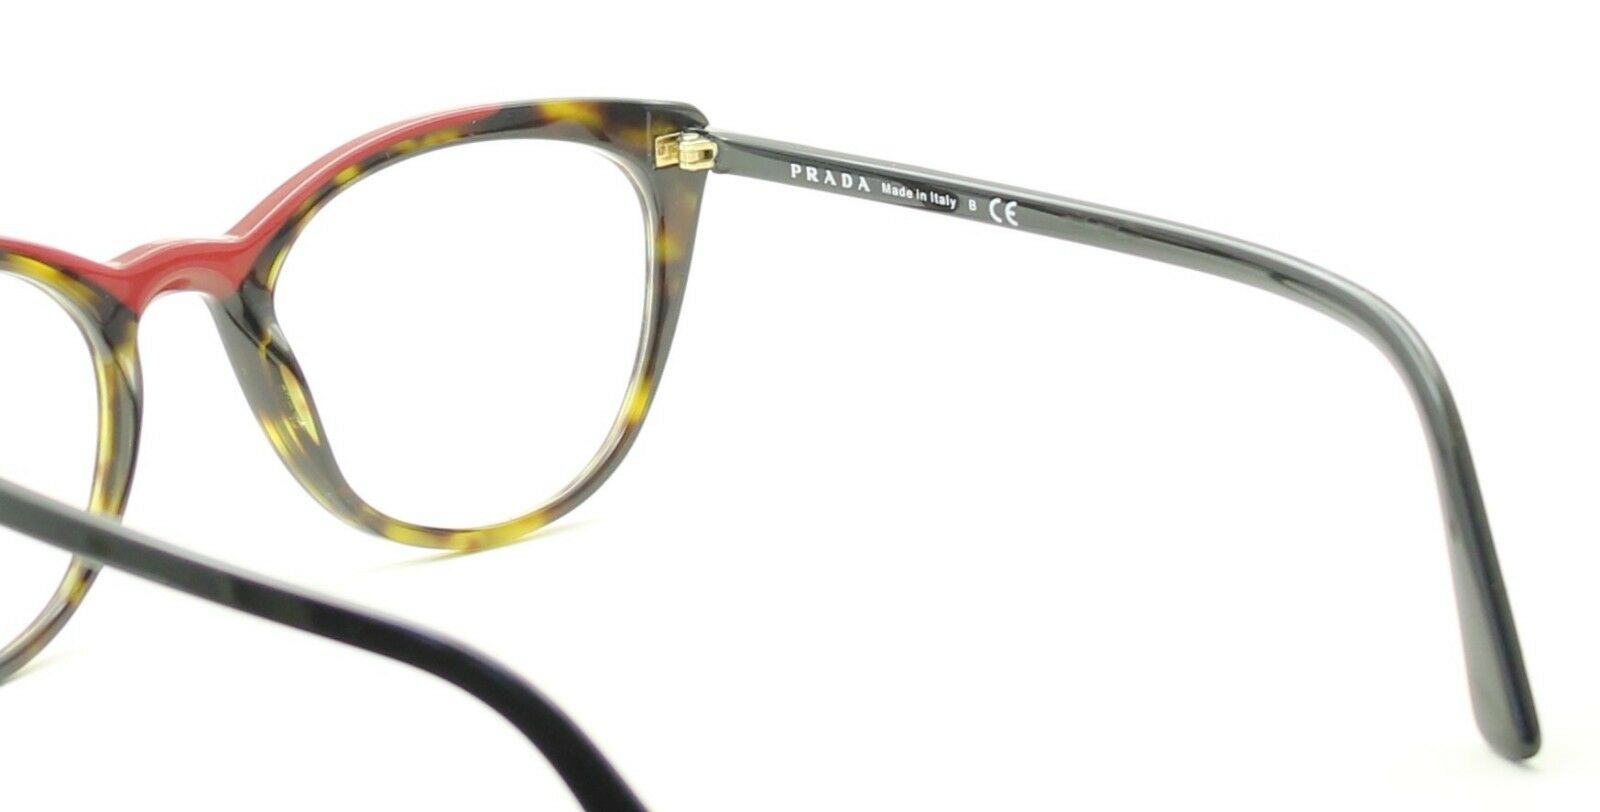 PRADA VPR 07V 320-1O1 51mm Eyewear FRAMES RX Optical Eyeglasses Glasses - Italy